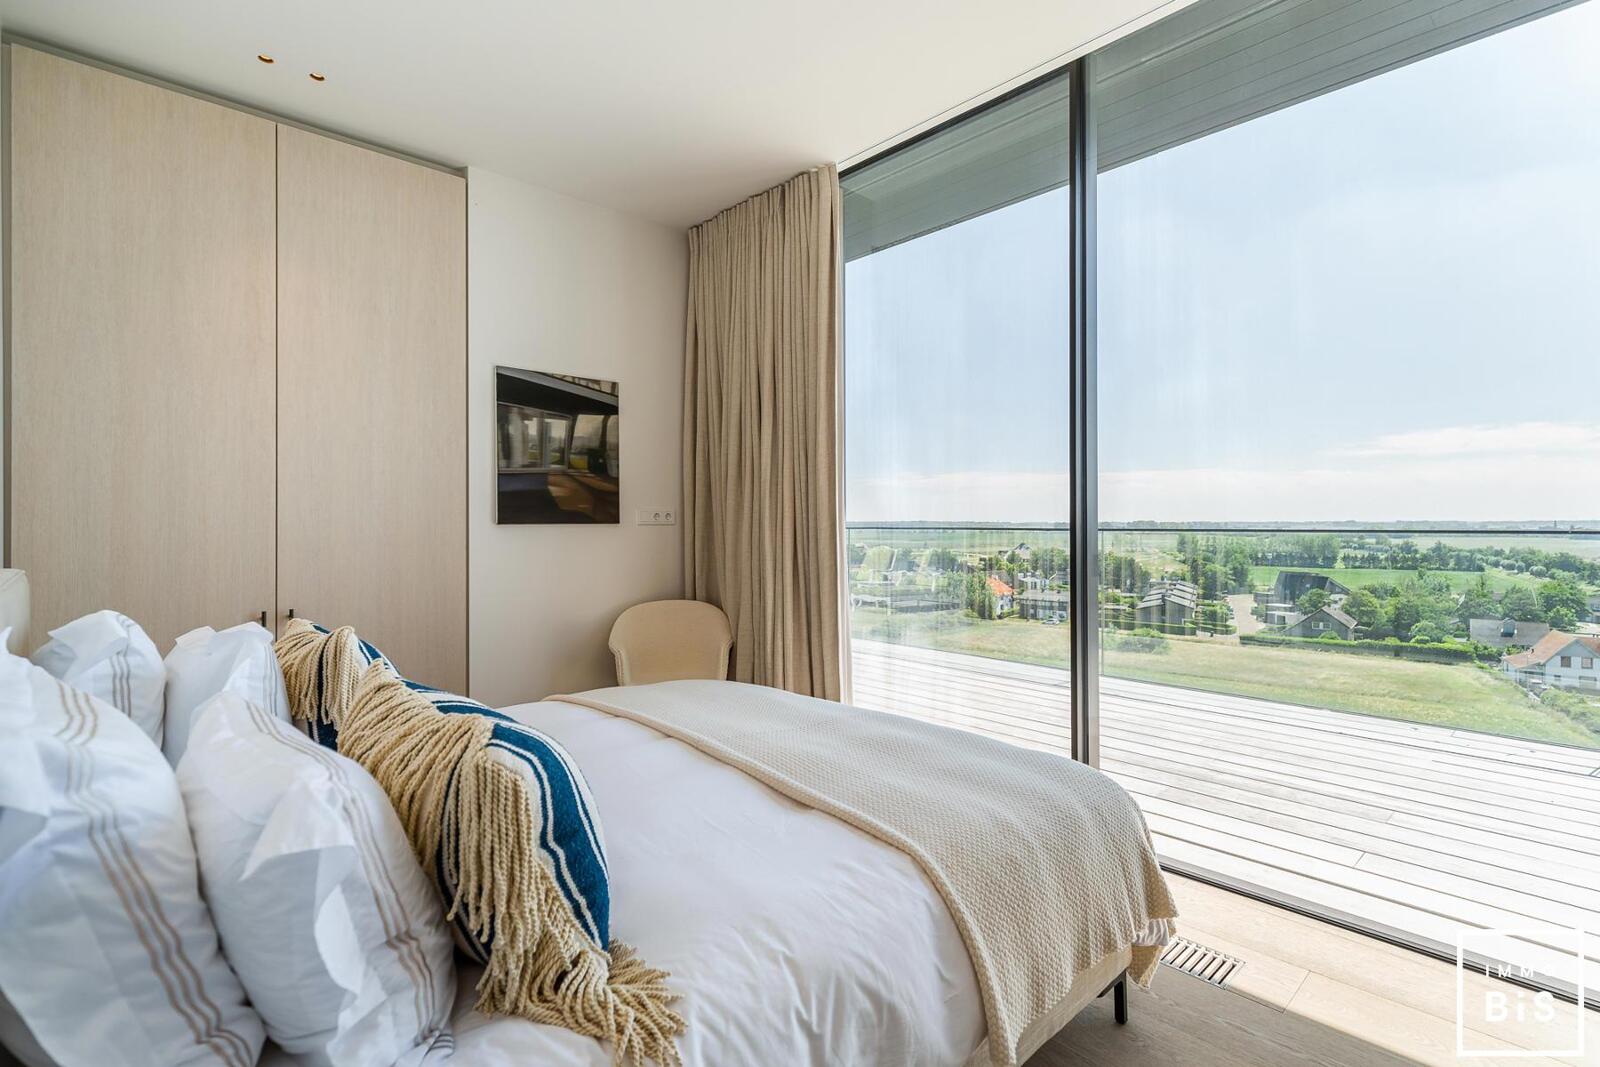 Luxe penthouse met zeezicht, terras en garage in Cadzand - Residentie Blanke Top 10